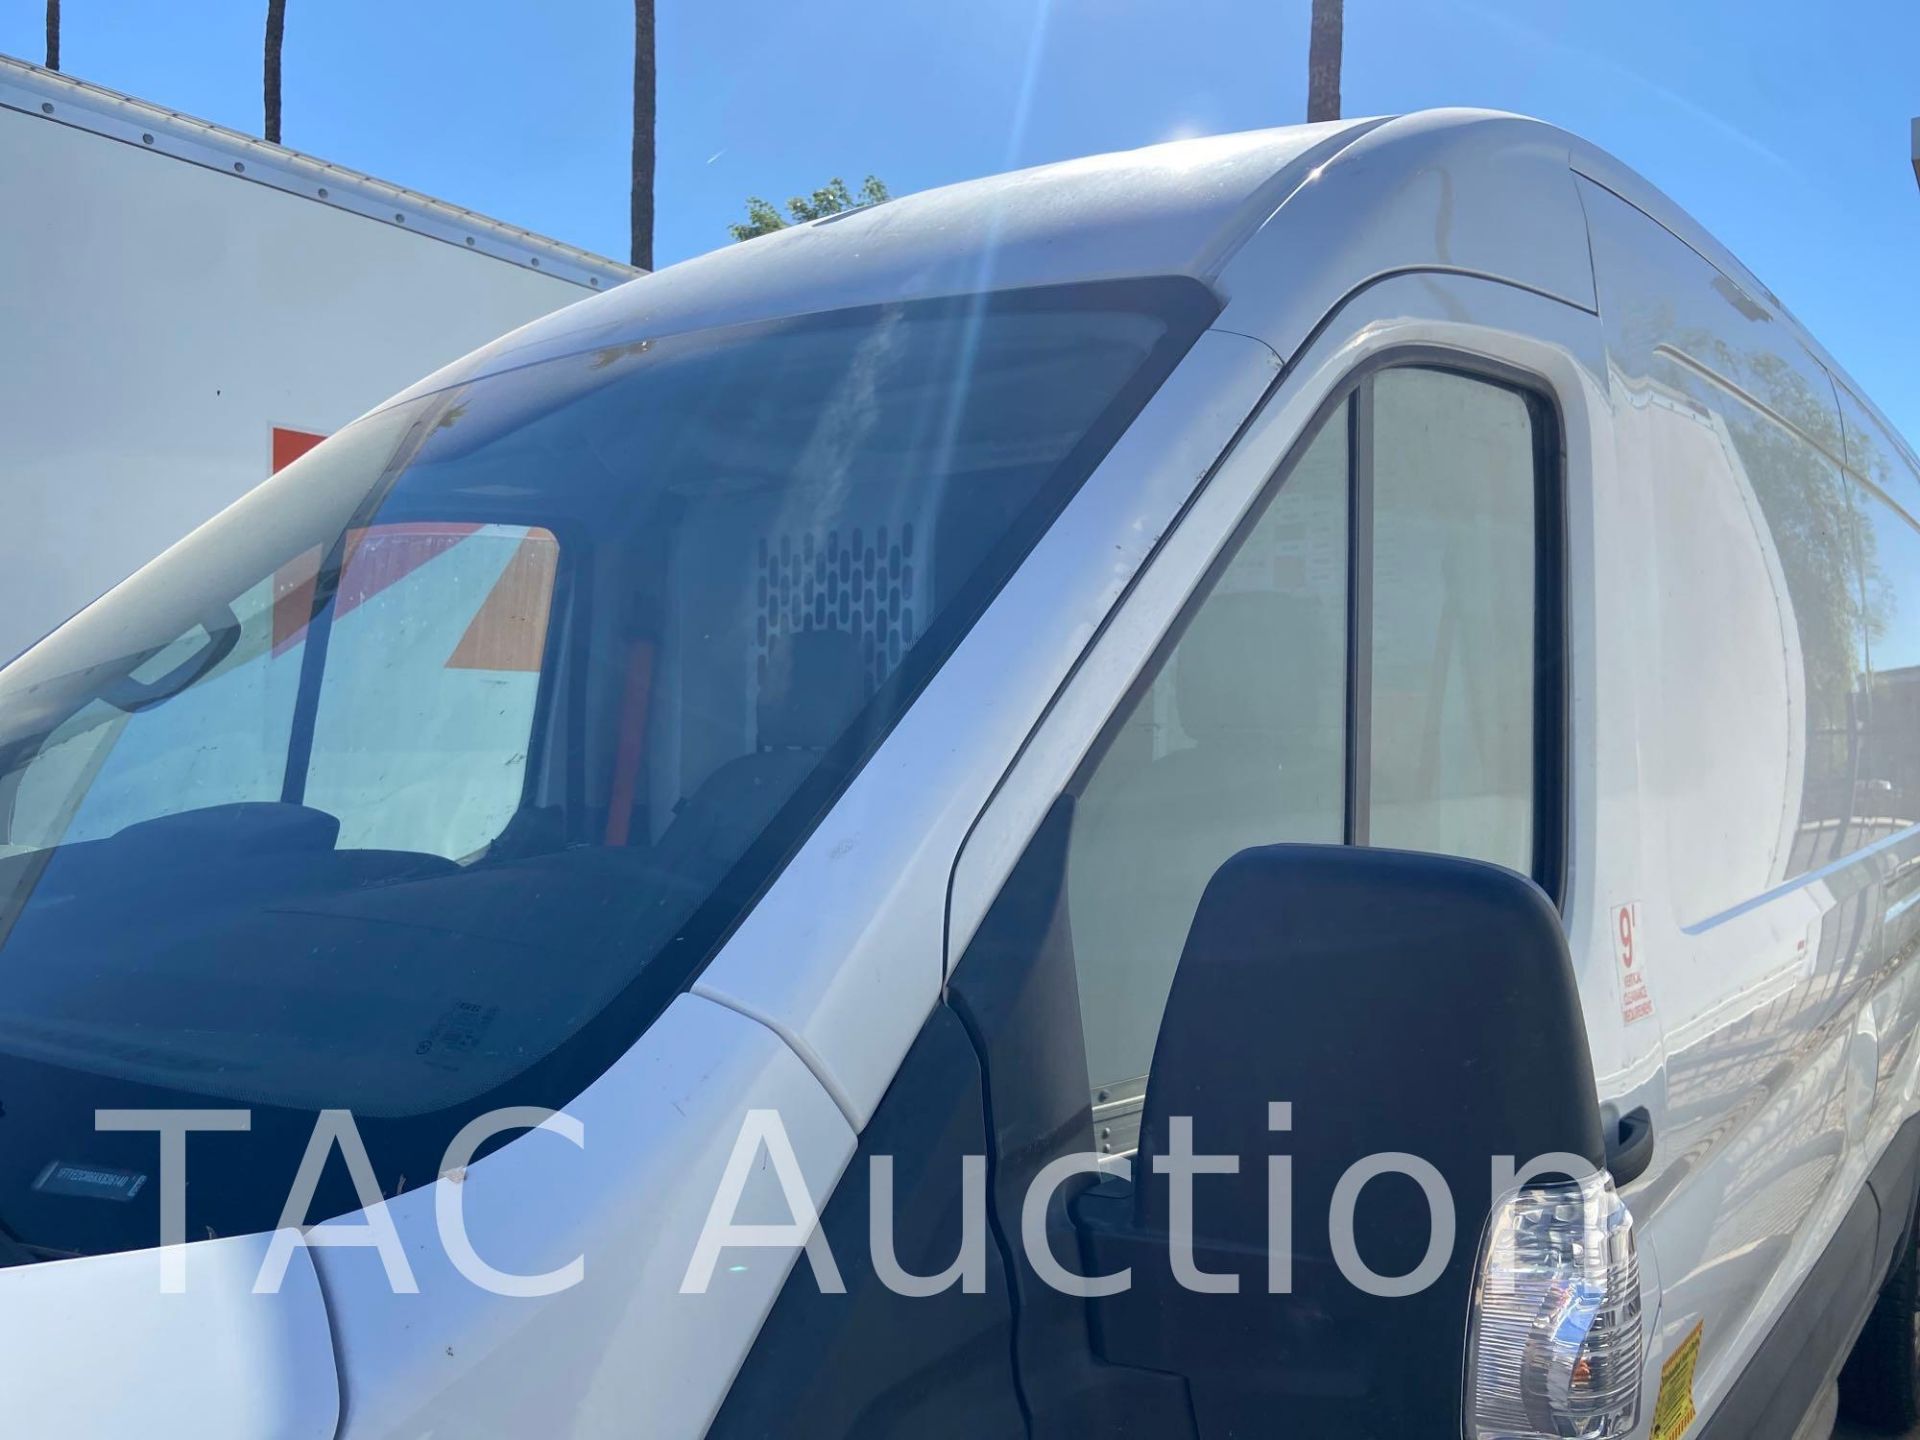 2019 Ford Transit 150 Cargo Van - Image 37 of 81